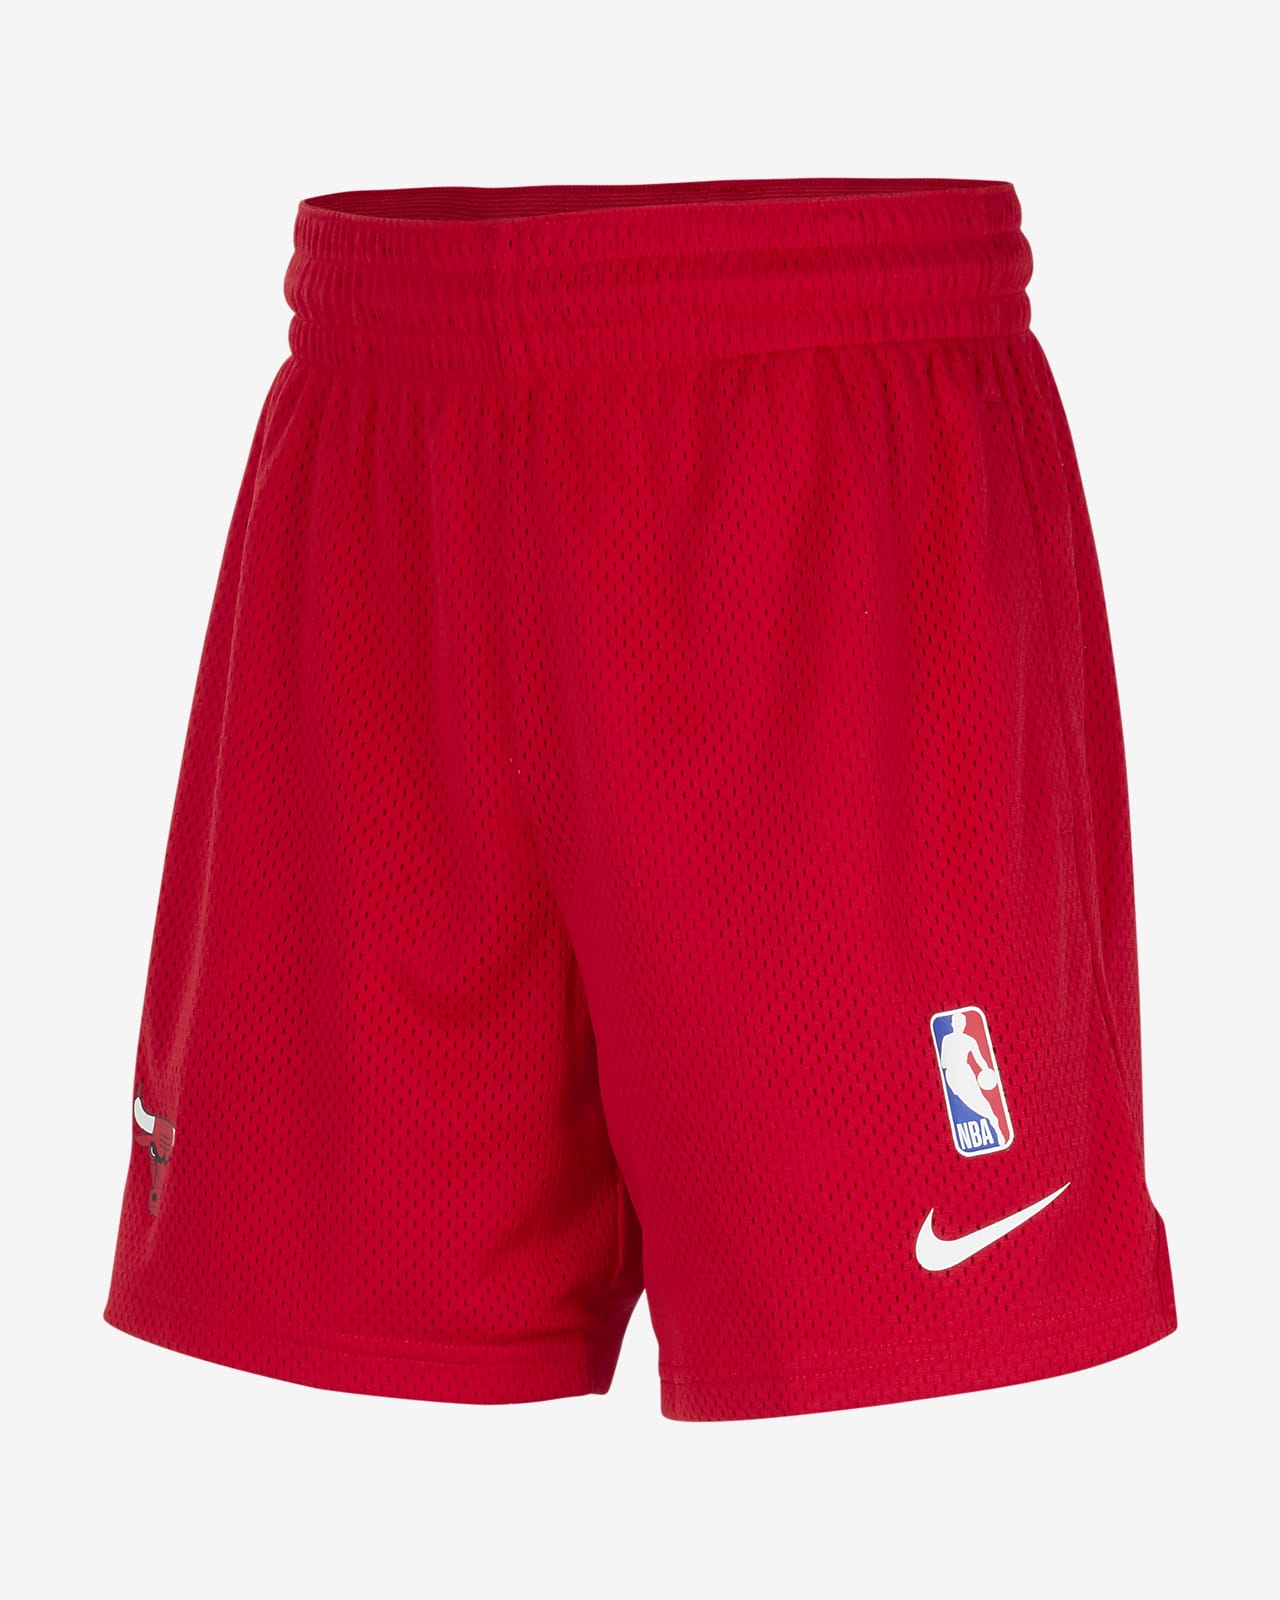 Chicago Bulls Nike NBA-shorts voor kids